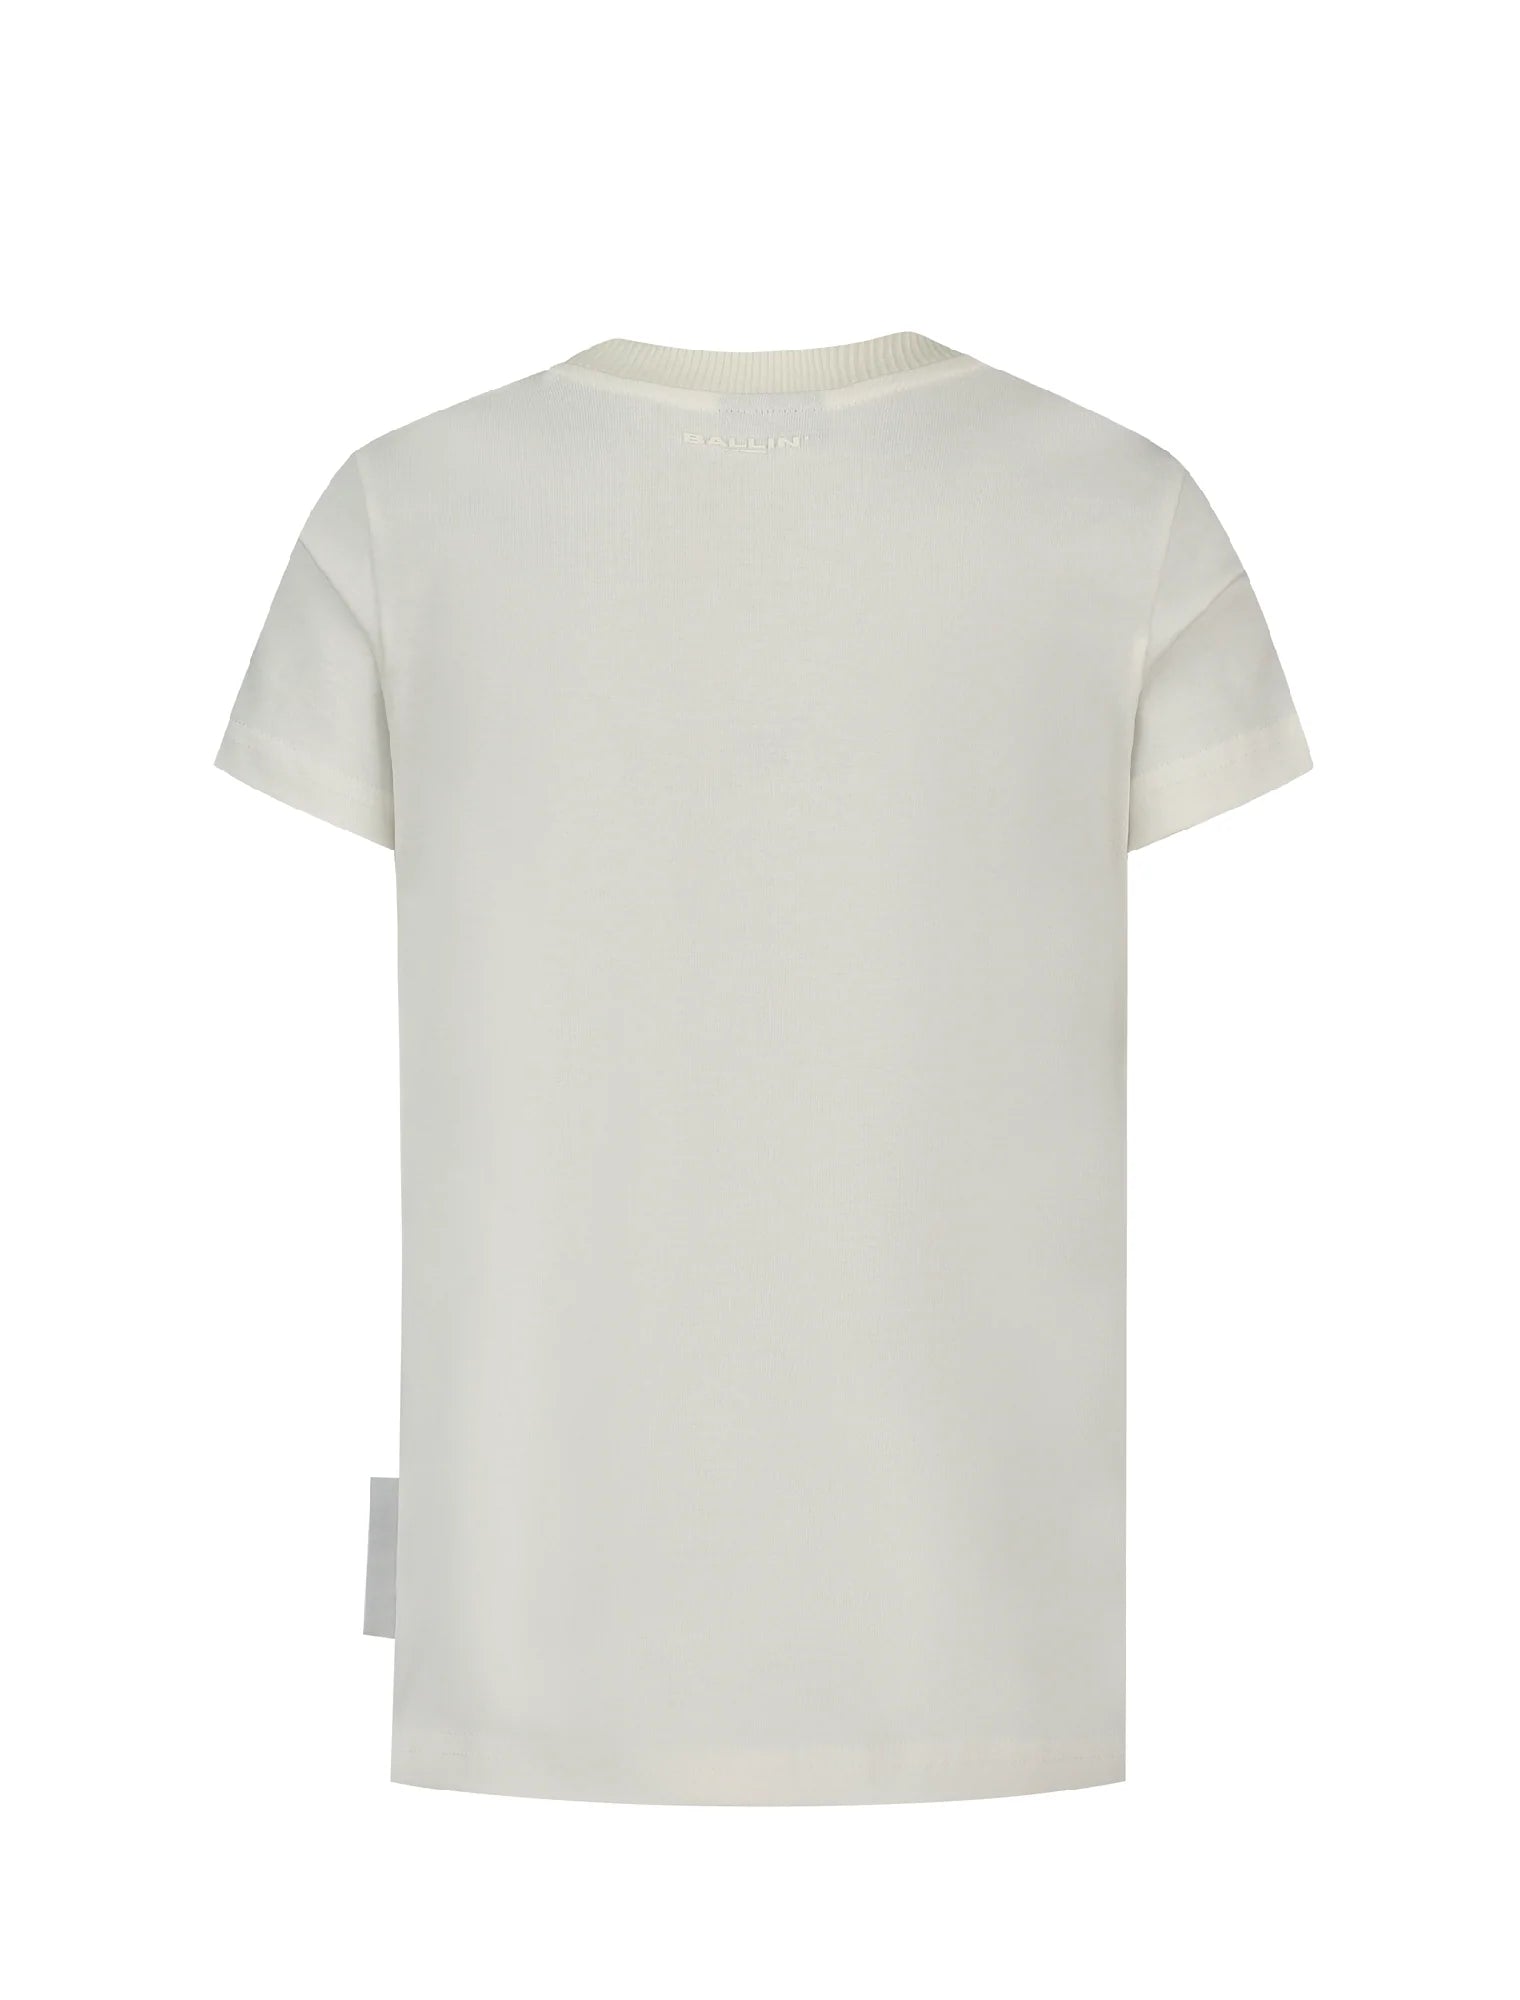 Unisexs T-shirt van Ballin Amsterdam in de kleur Off white in maat 176.